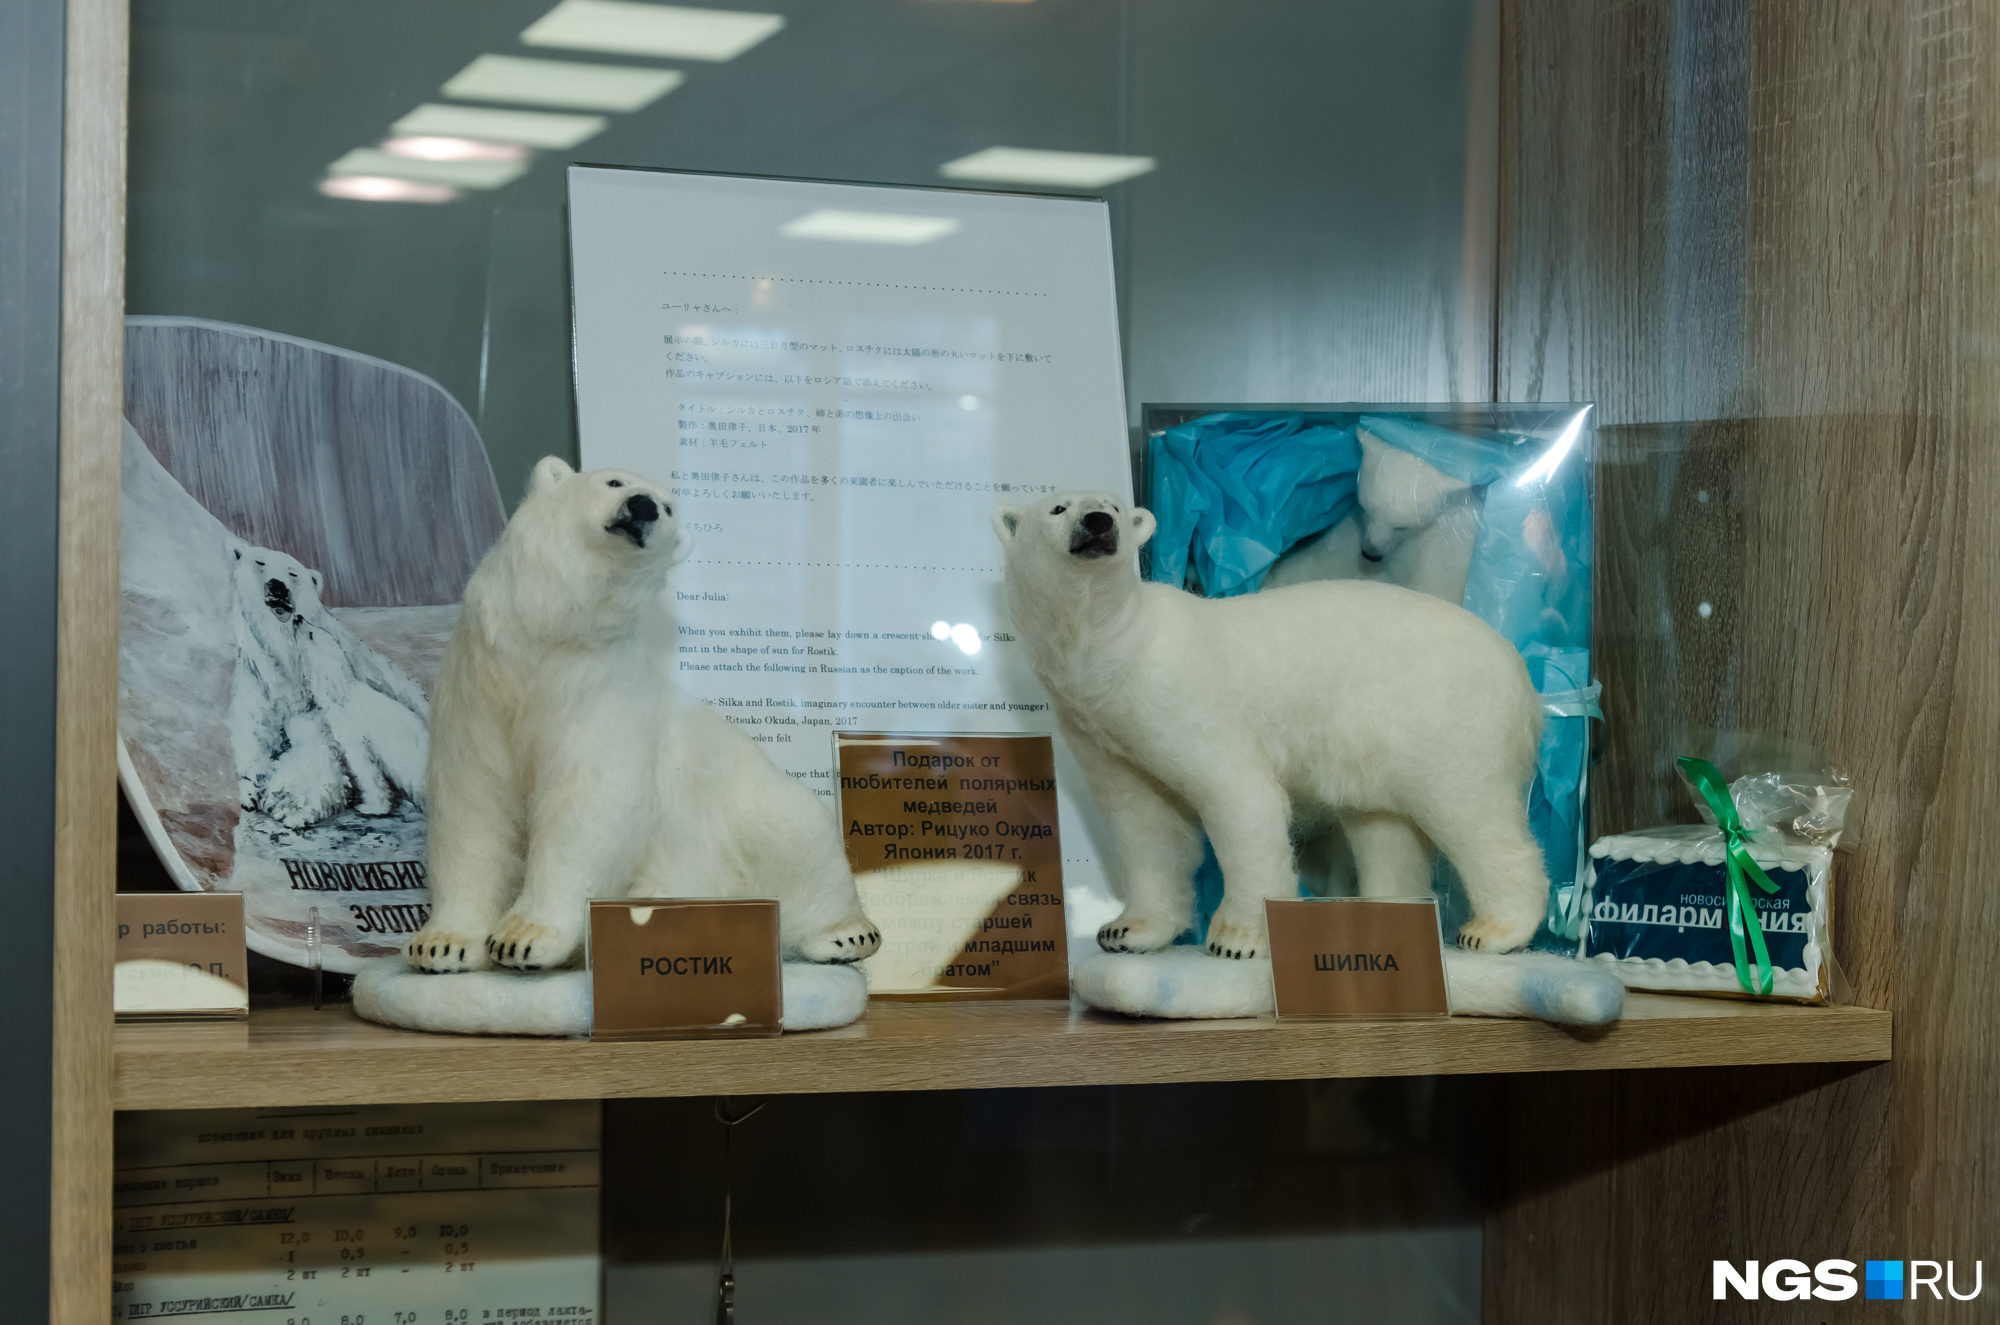 Фигурки белых медведей, изготовленные их поклонниками из Японии